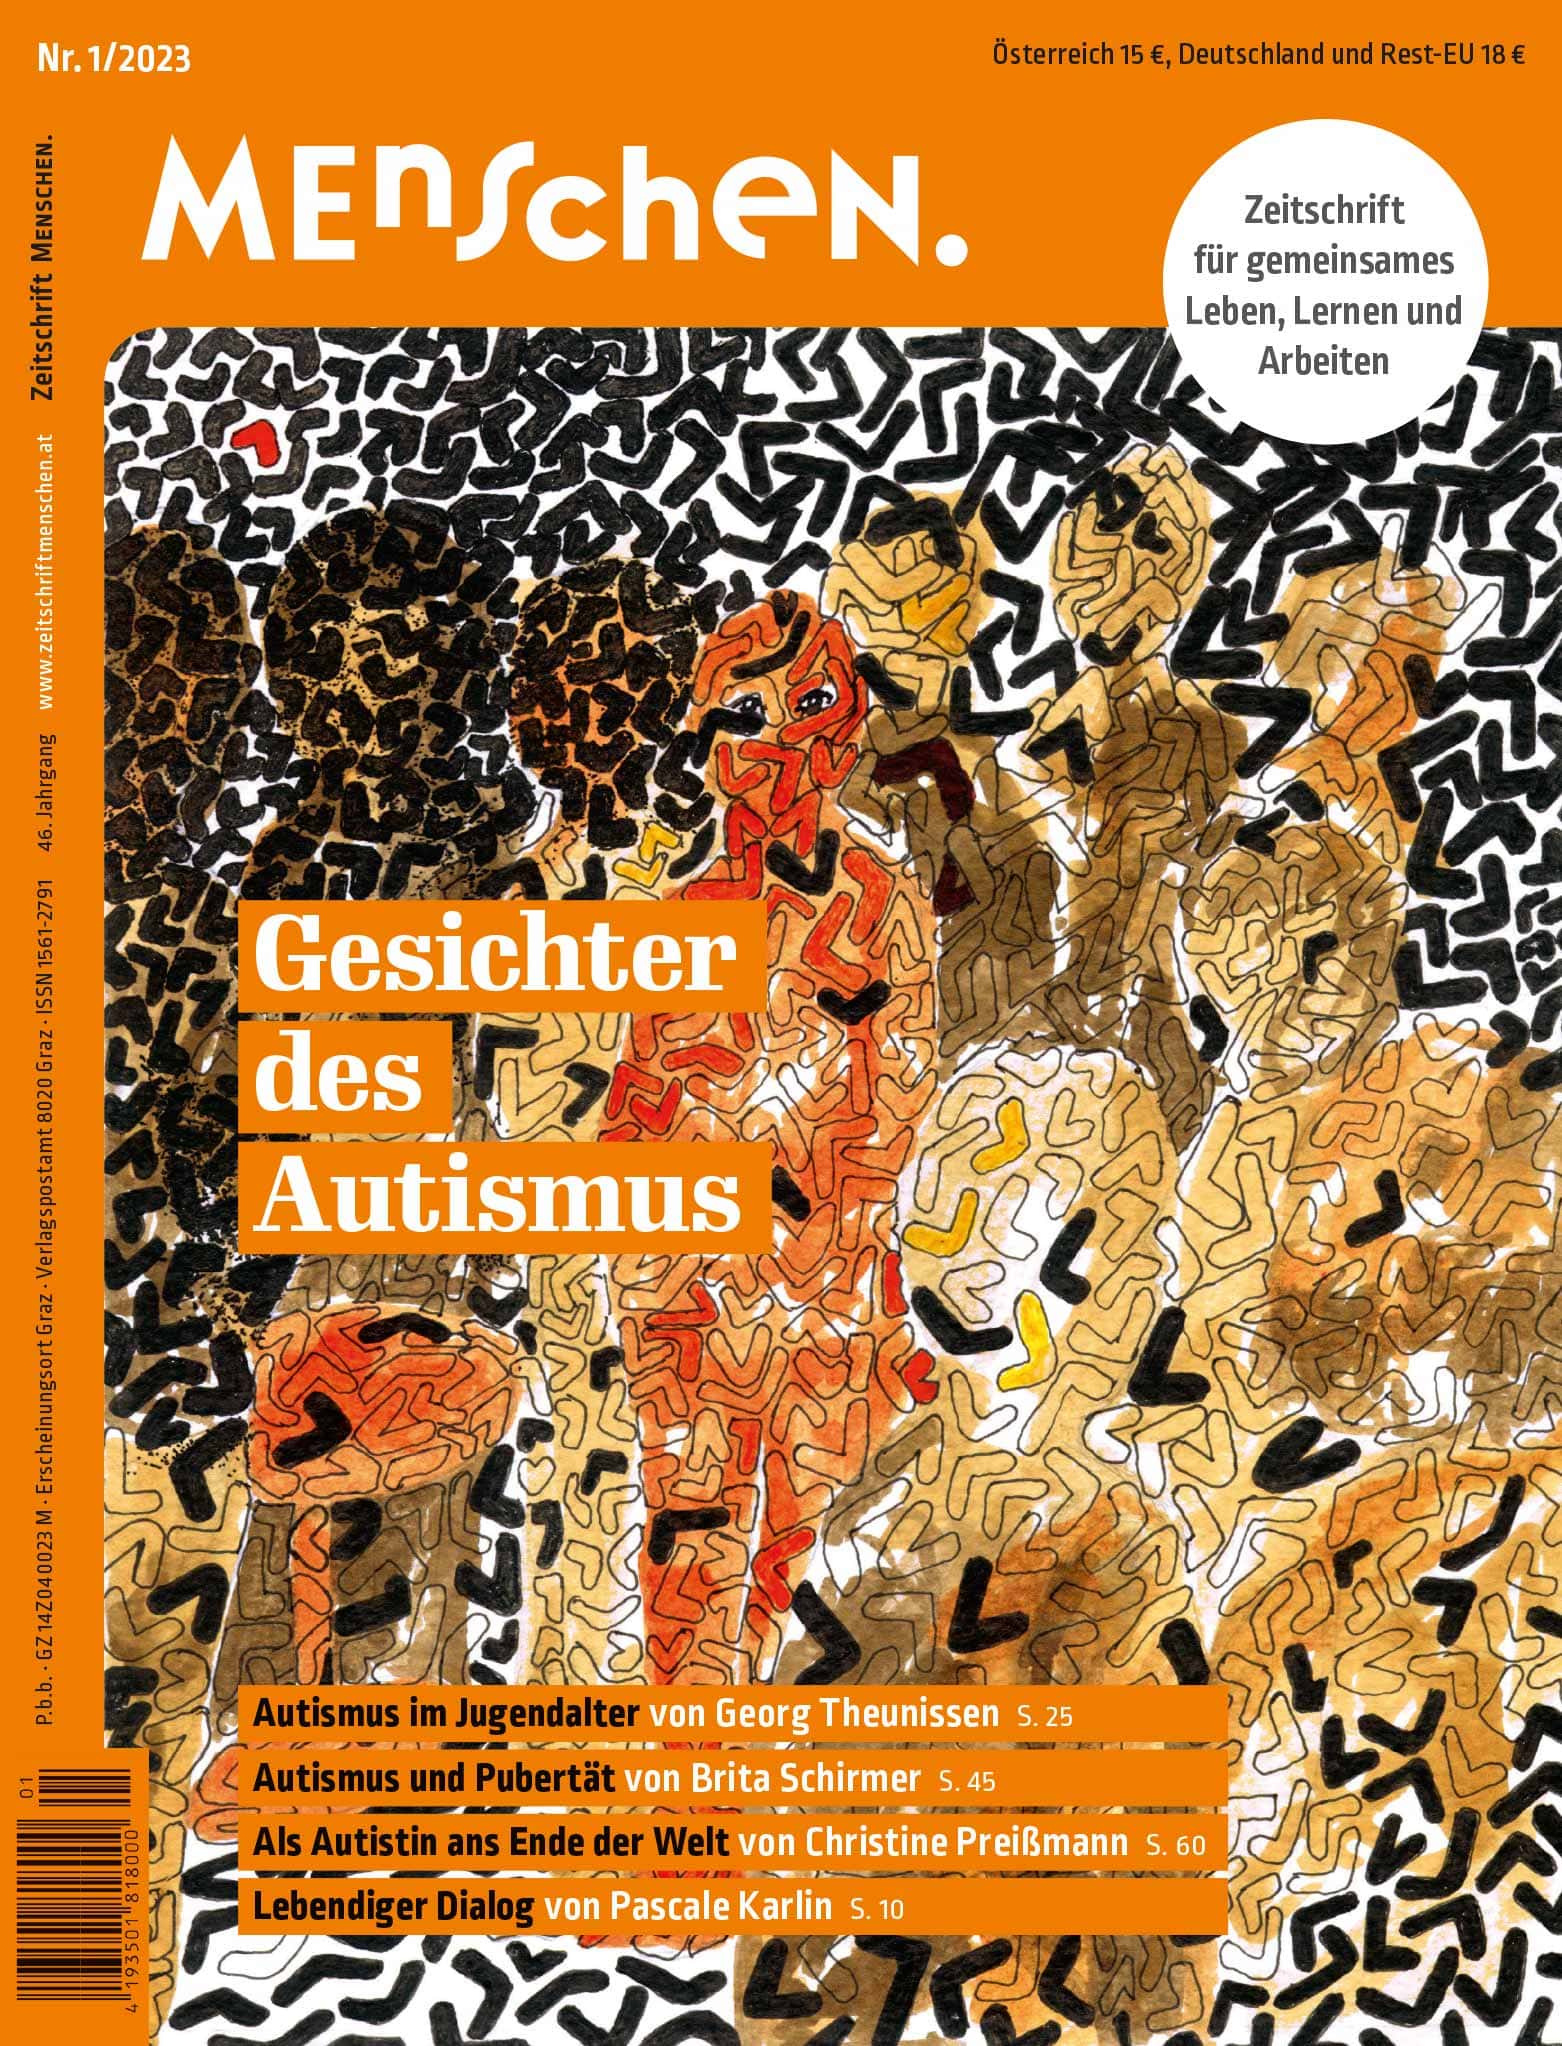 Zeitschriftencover mit dem Titel „Menschen“ mit einem Puzzlemuster-Design mit abstrakten menschlichen Figuren zum Thema Autismus in leuchtenden Orange- und Schwarztönen.